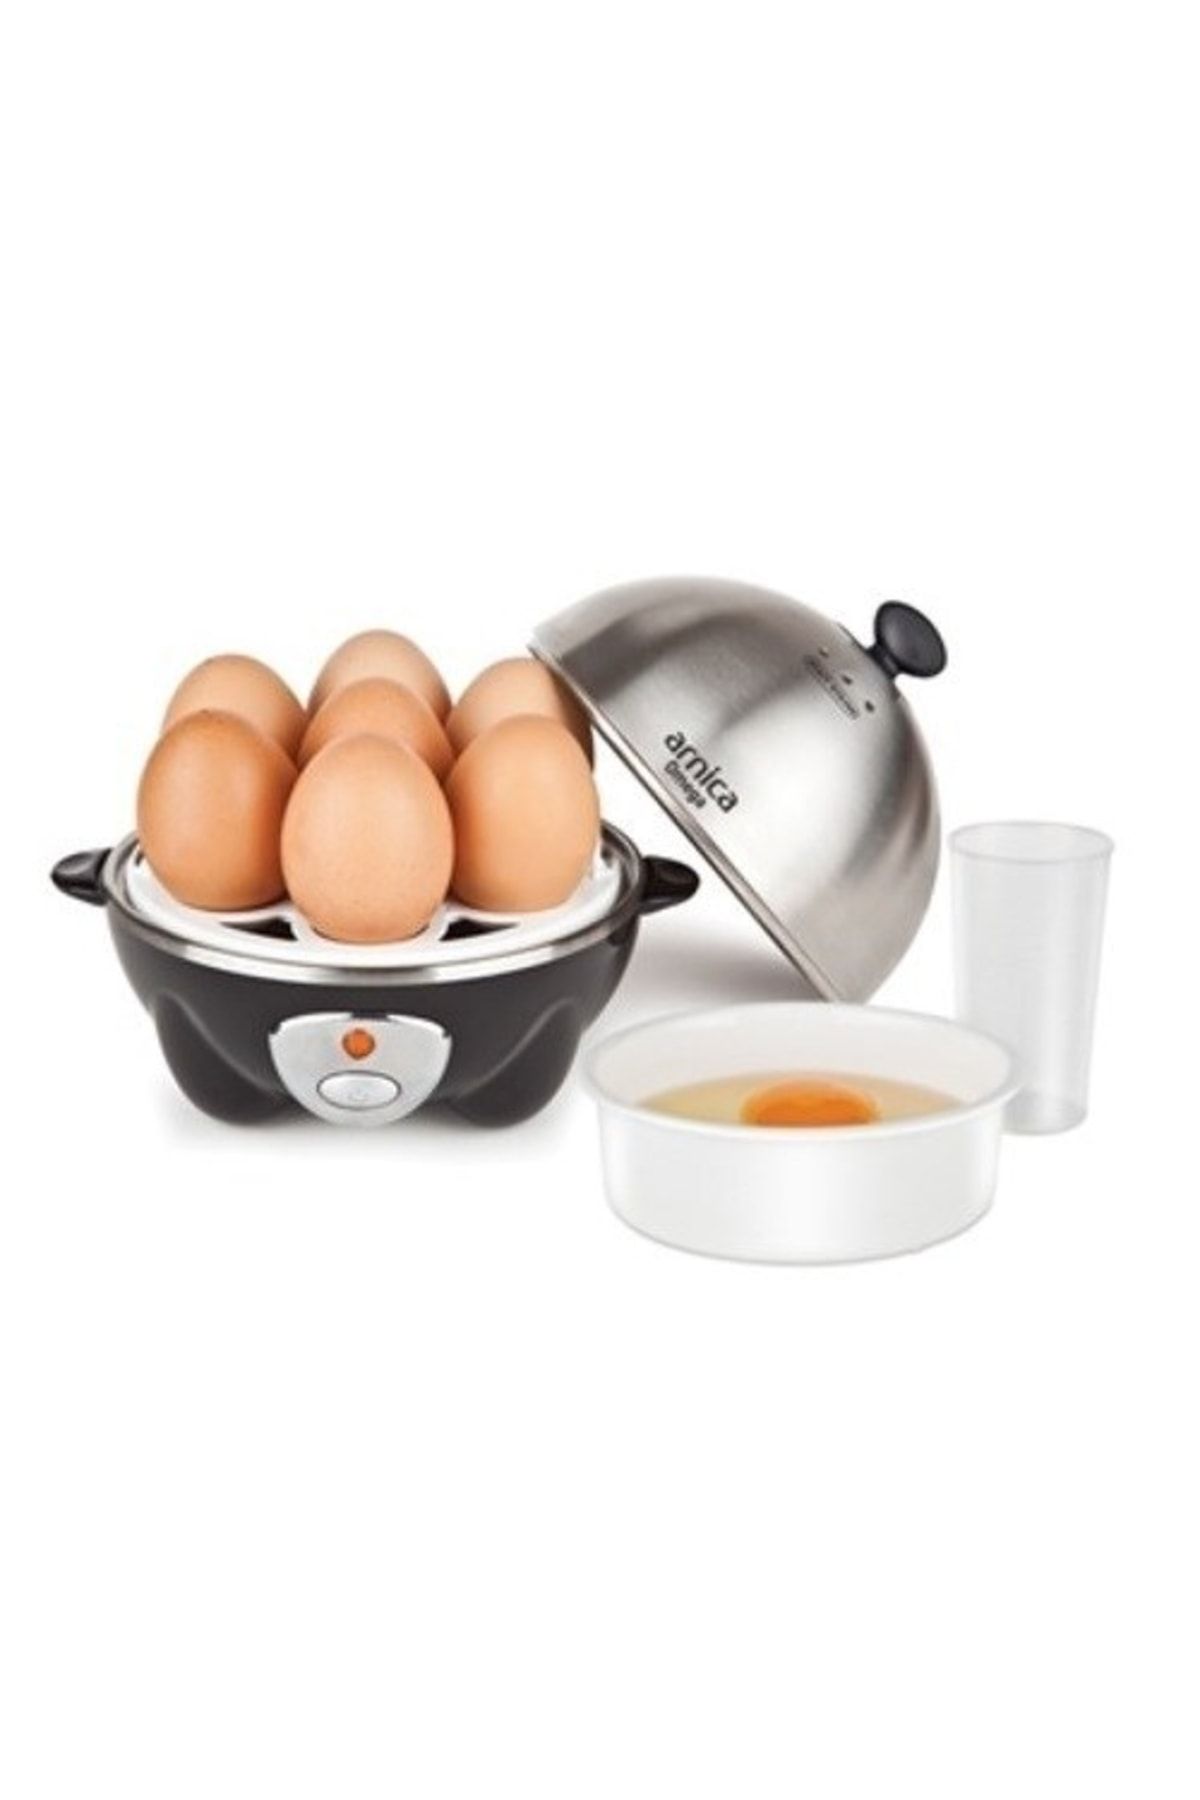 Arnica Omega Yumurta Pişirme Makinası - Gh25100